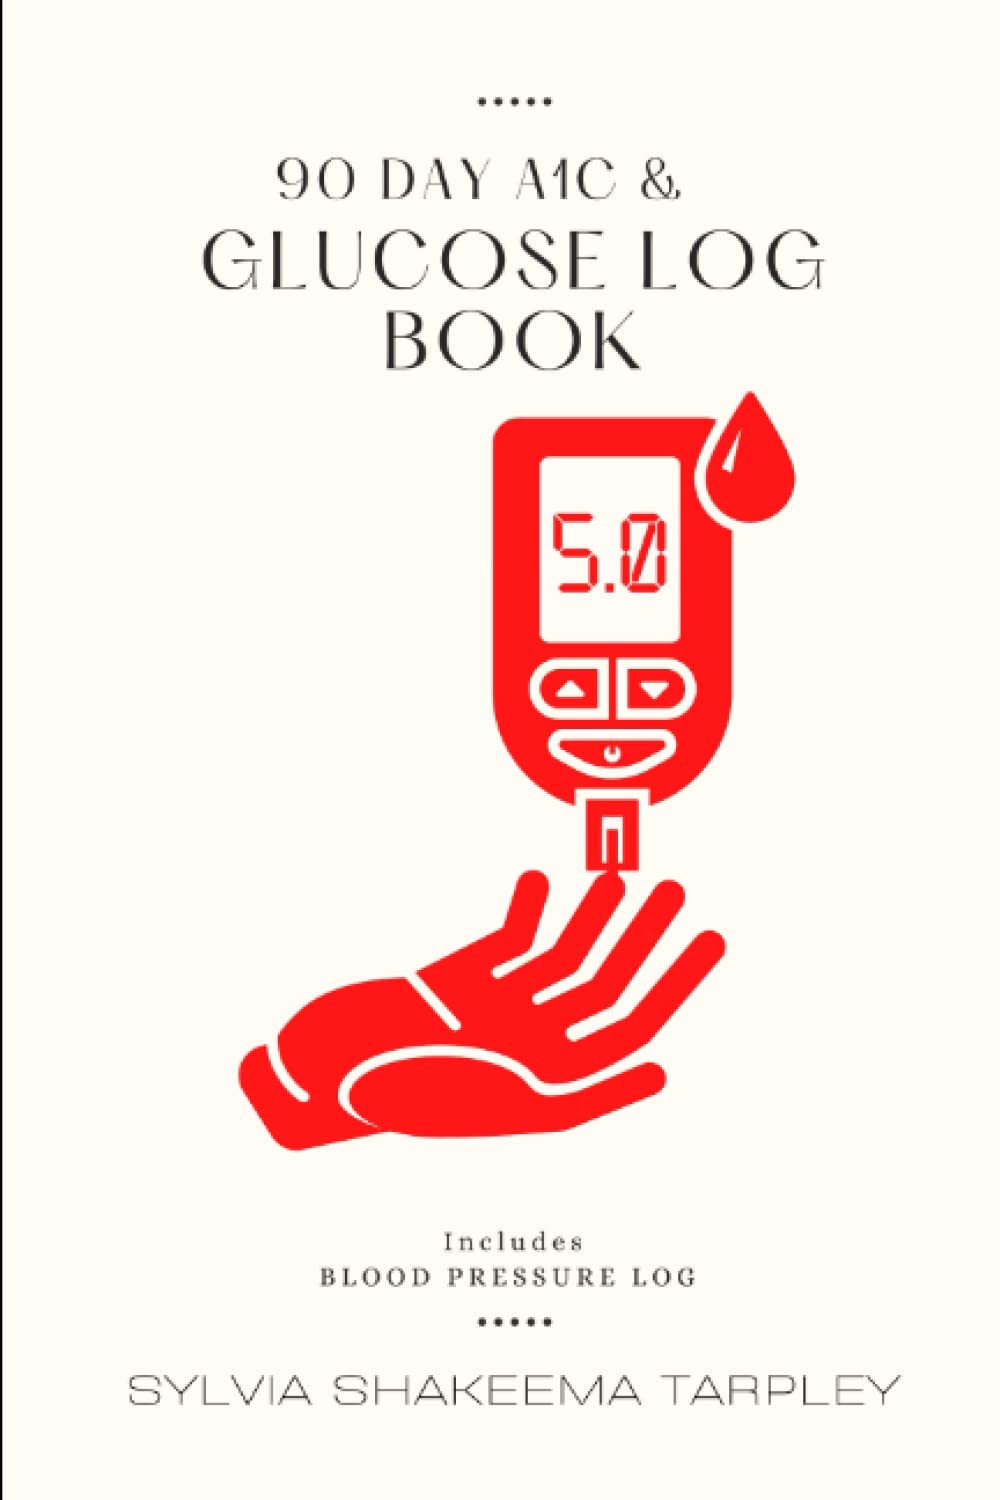 90 Day A1C & Glucose Log Book